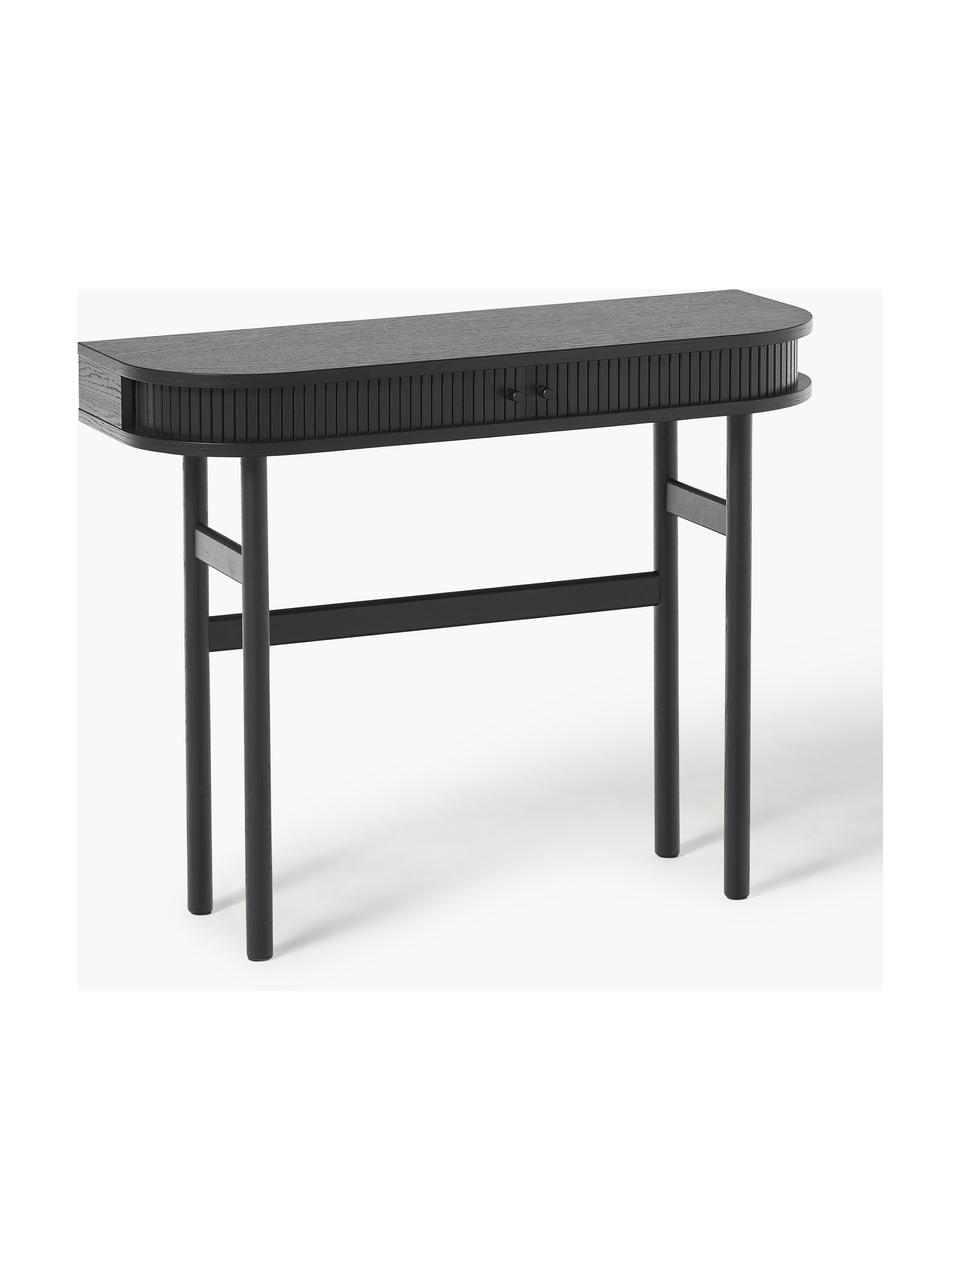 Konzolový stolek s žebrovanou přední stranou Front, Dubové dřevo, černě lakované, Š 100 cm, V 80 cm